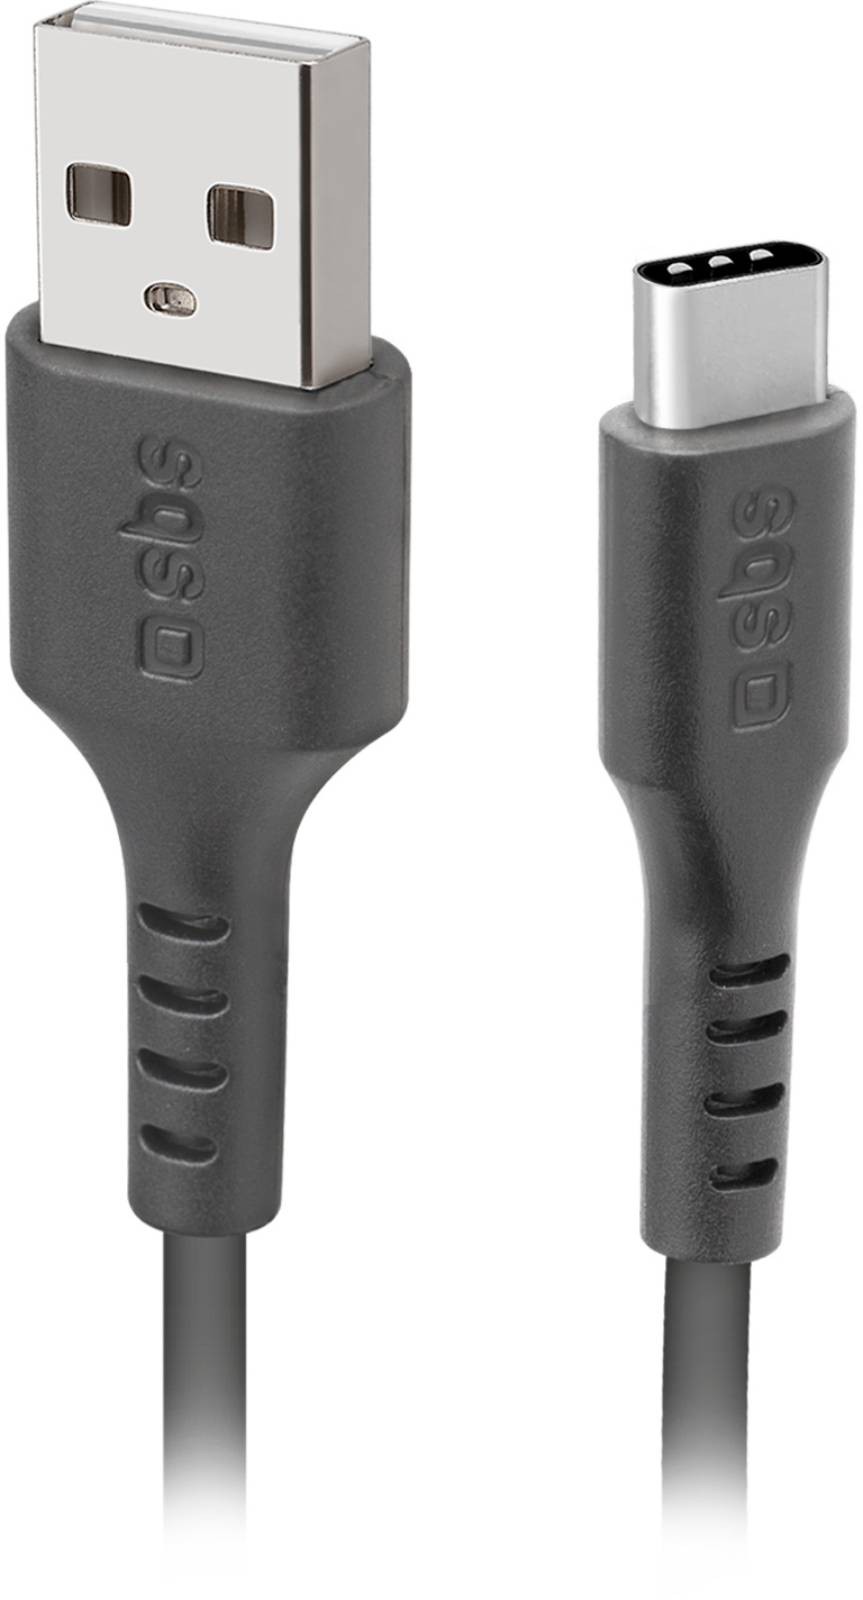 SBS Câble USB Câble de données USB 2.0 - Type-C - CABL-USB2/0-TYPEC